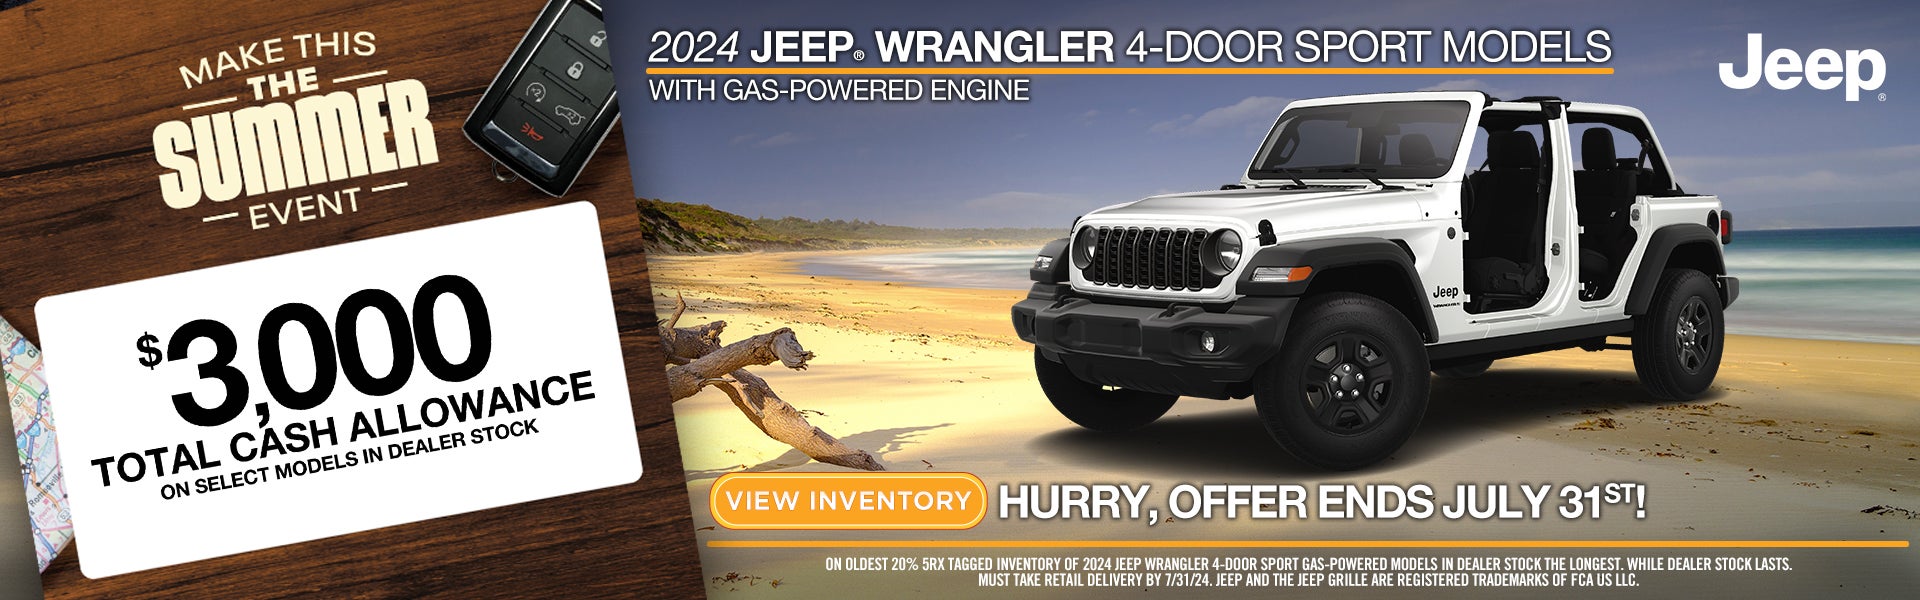 2024 Jeep Wrangler 4-Door Sport Models